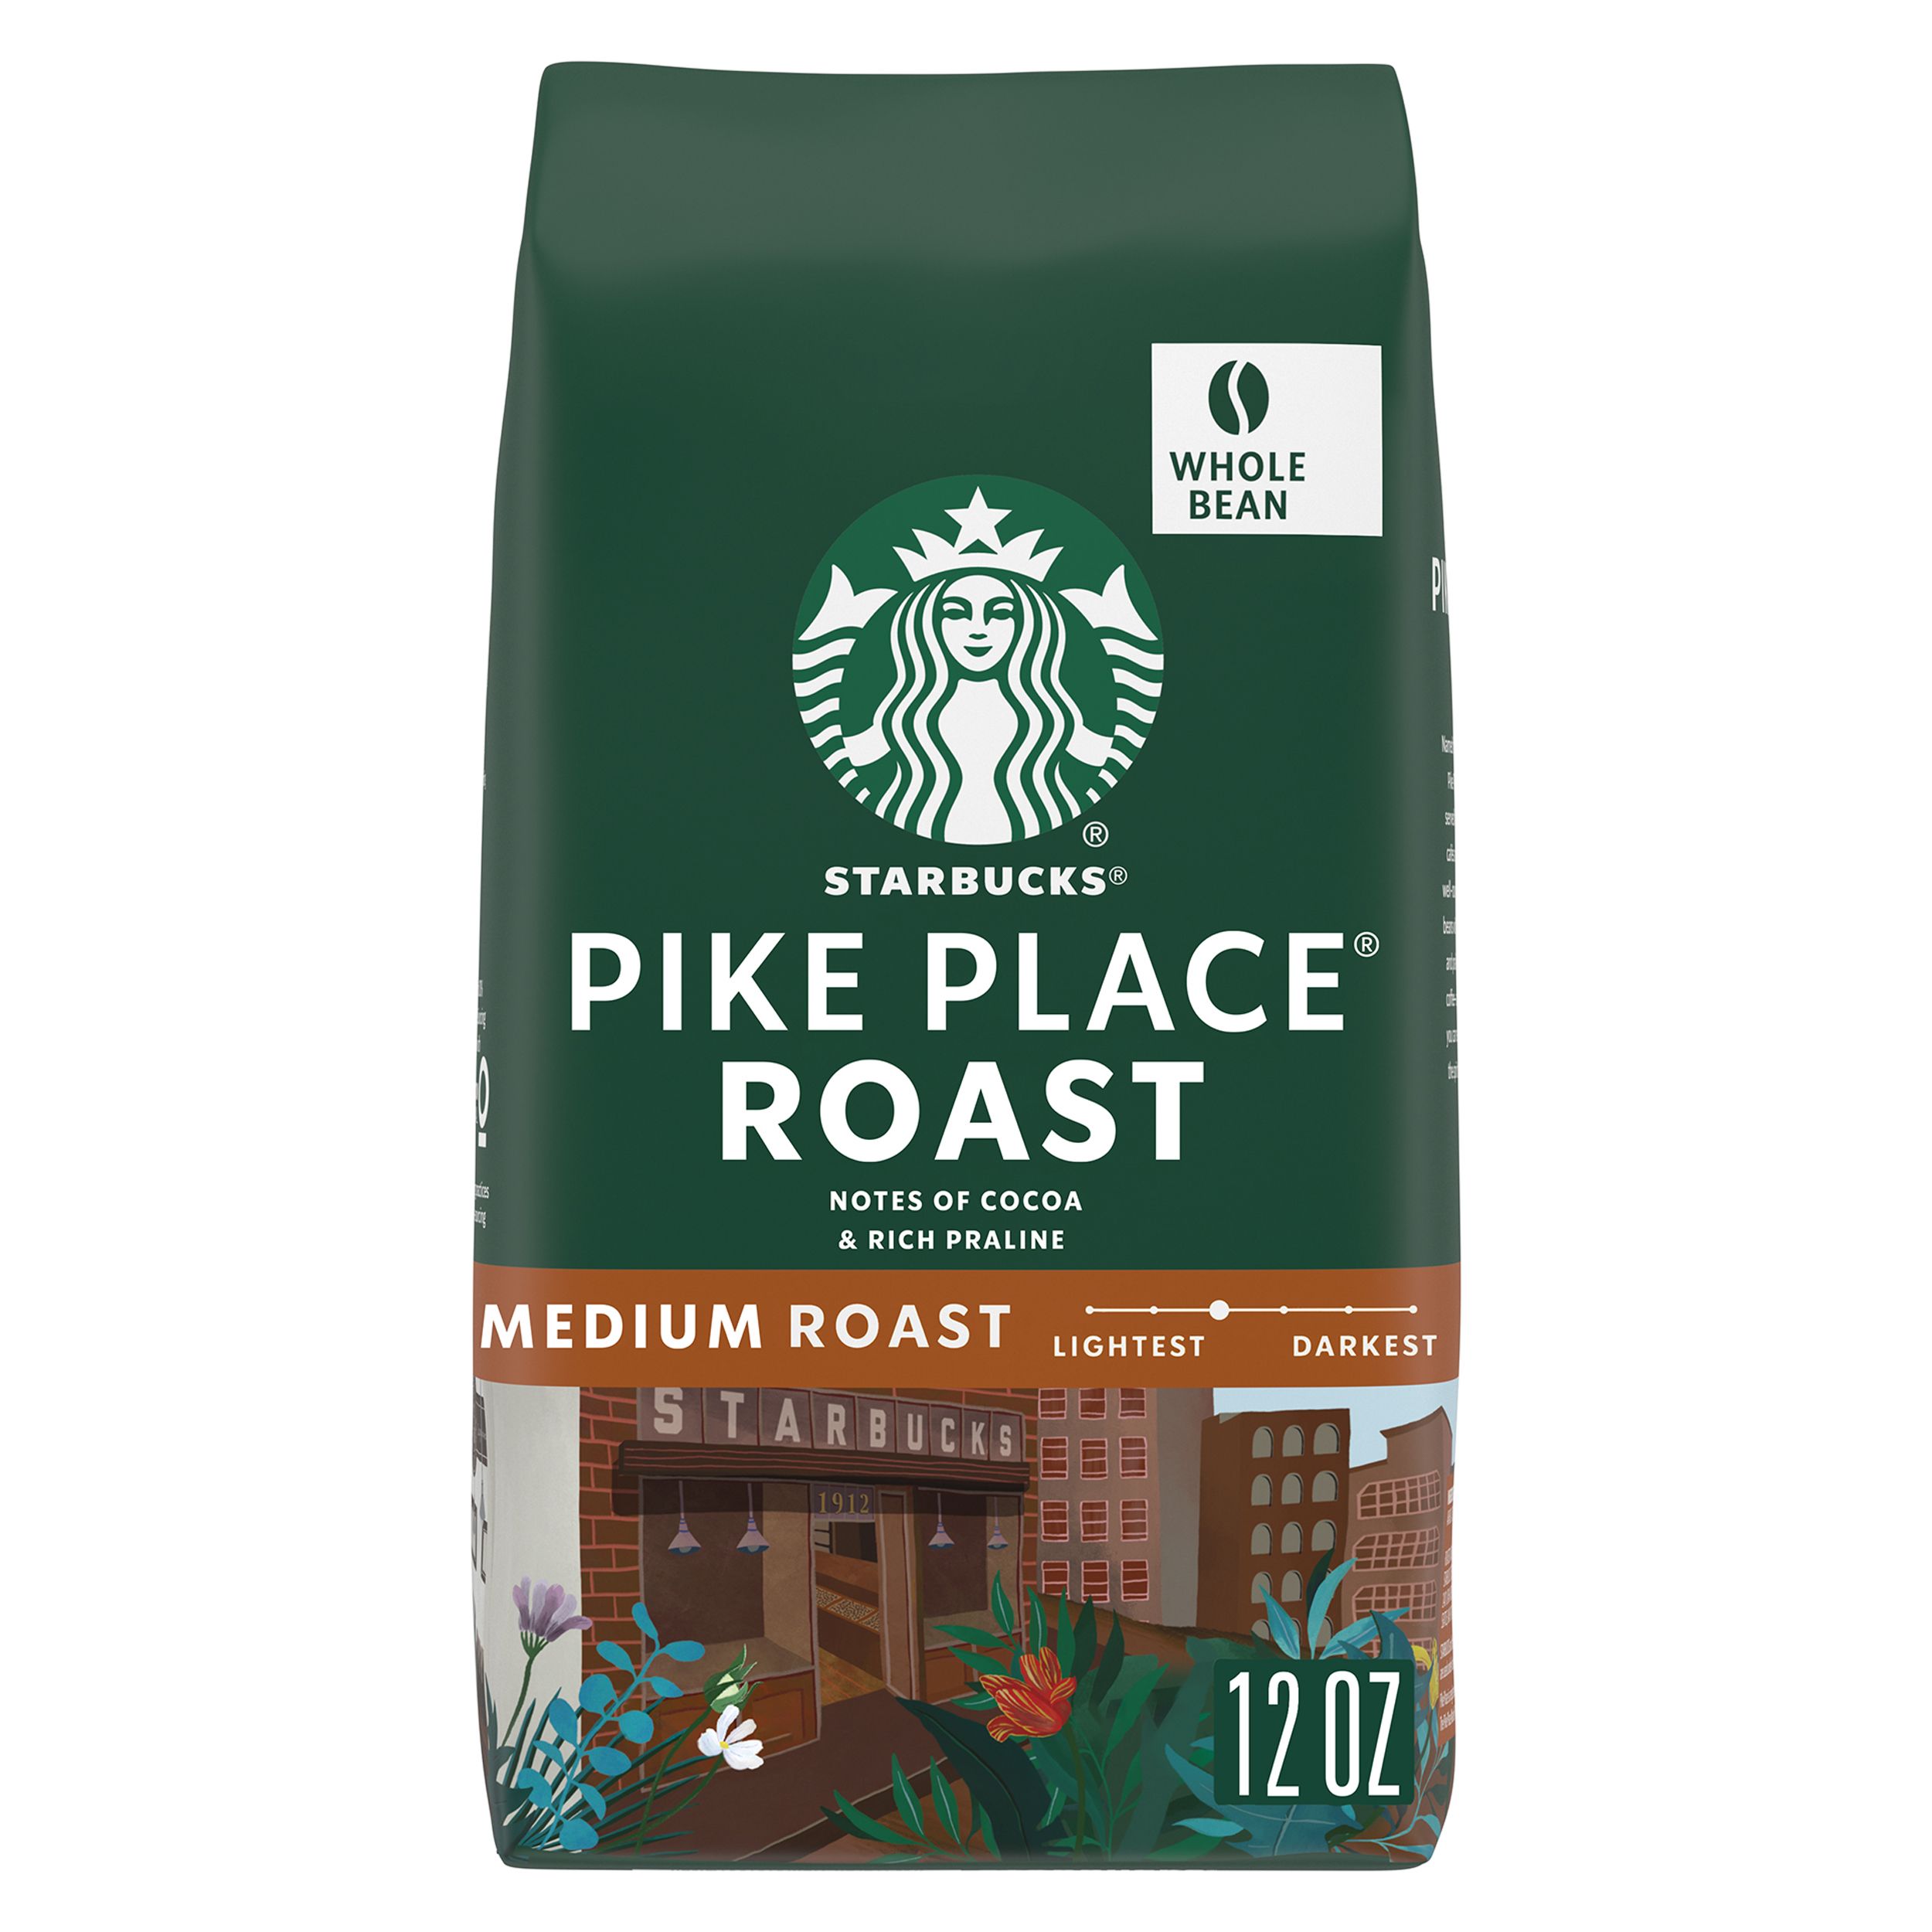 Starbucks Pike Place Roast, Whole Bean Coffee, Medium Roast, 12 oz - image 1 of 8